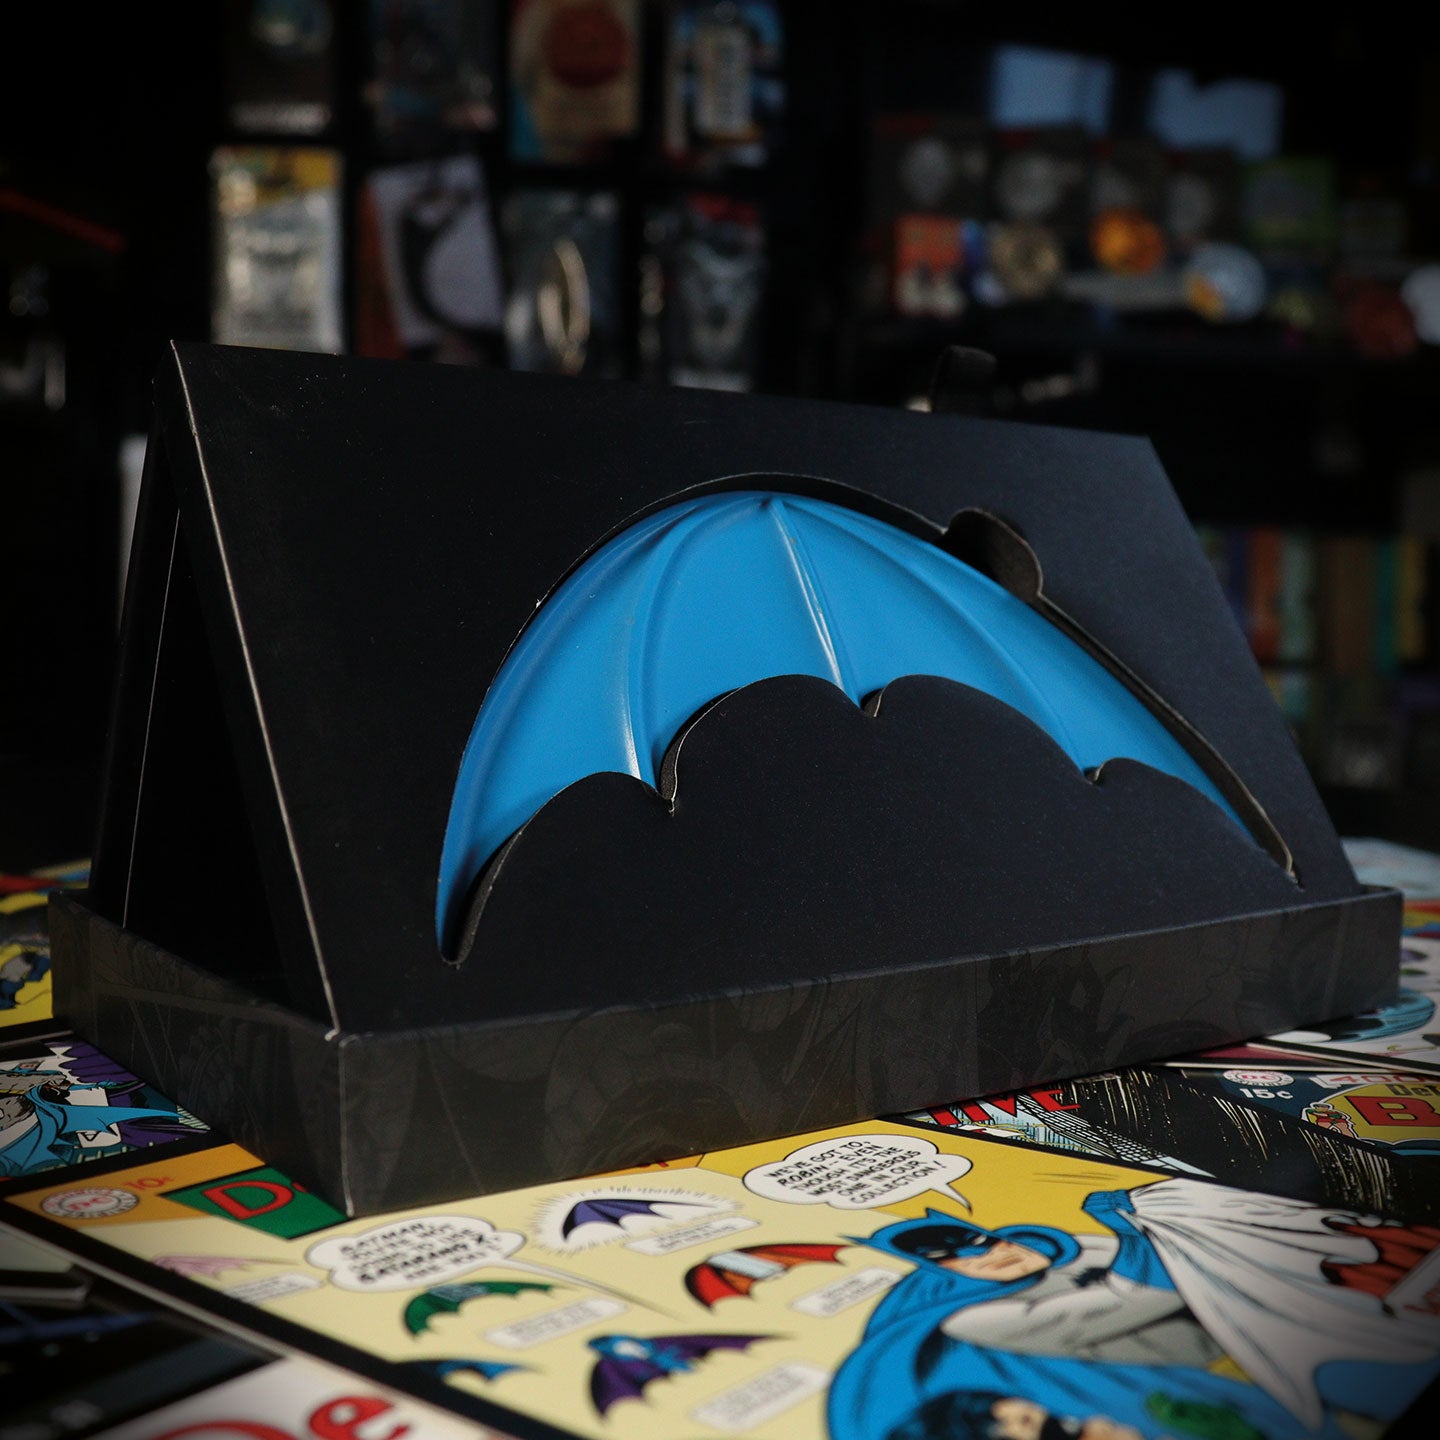 DC Comics Batman Limited Edition Replica Batarang